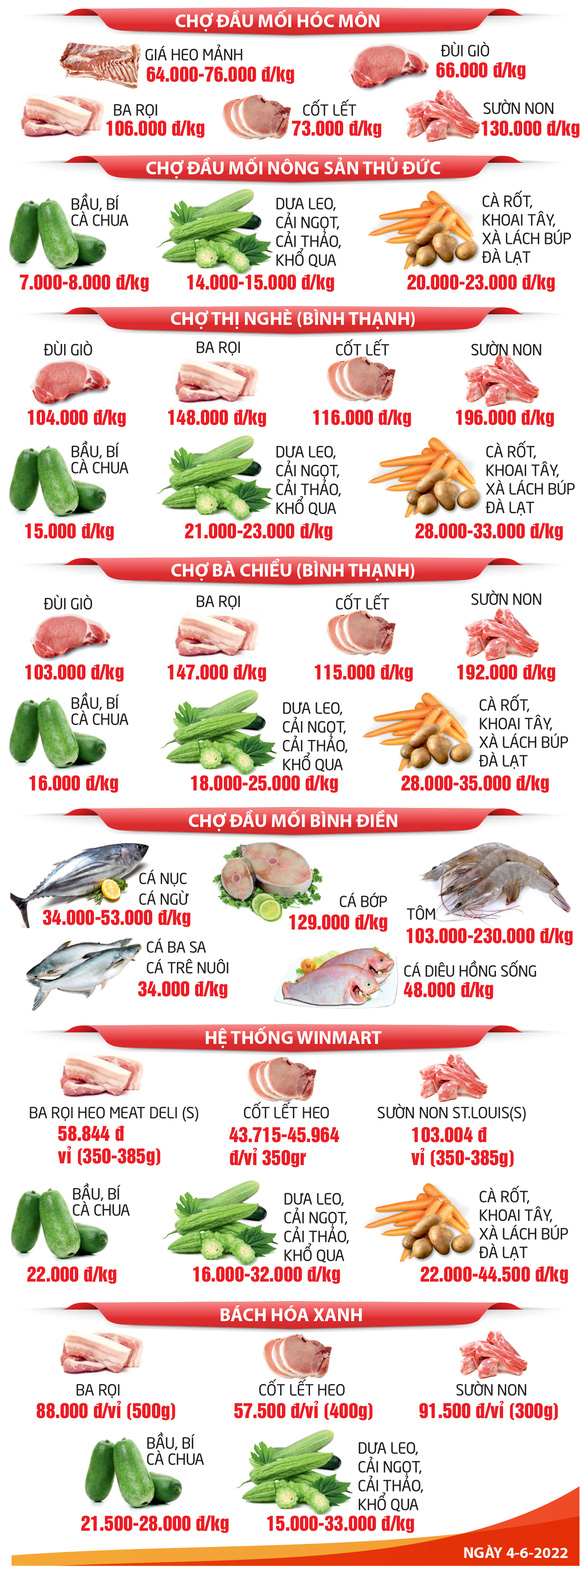 GIÁ CẢ HẰNG NGÀY 4-6: Người nghèo thêm khó vì giá trứng tăng cao; cá tra tăng giá nhờ xuất khẩu tốt - Ảnh 3.